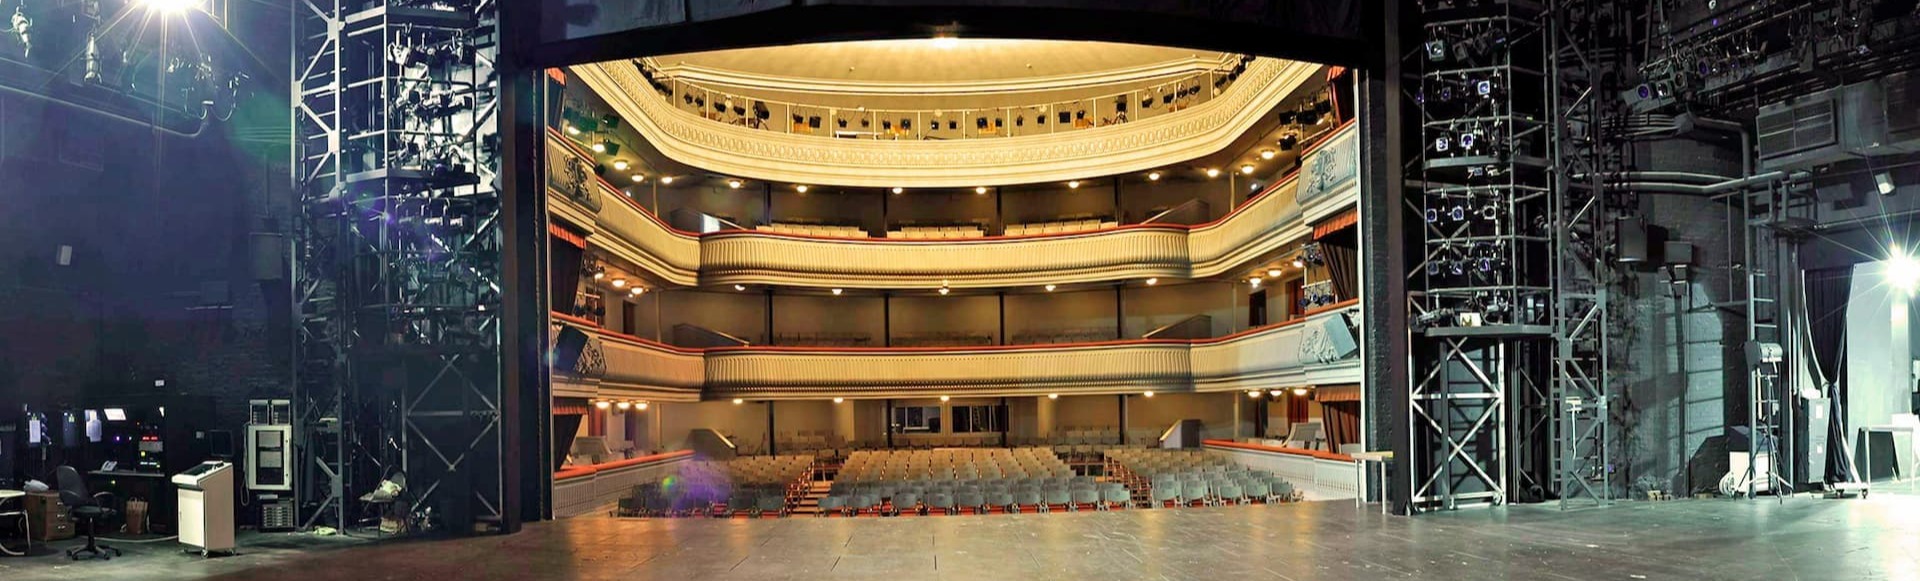 театр наций большой зал